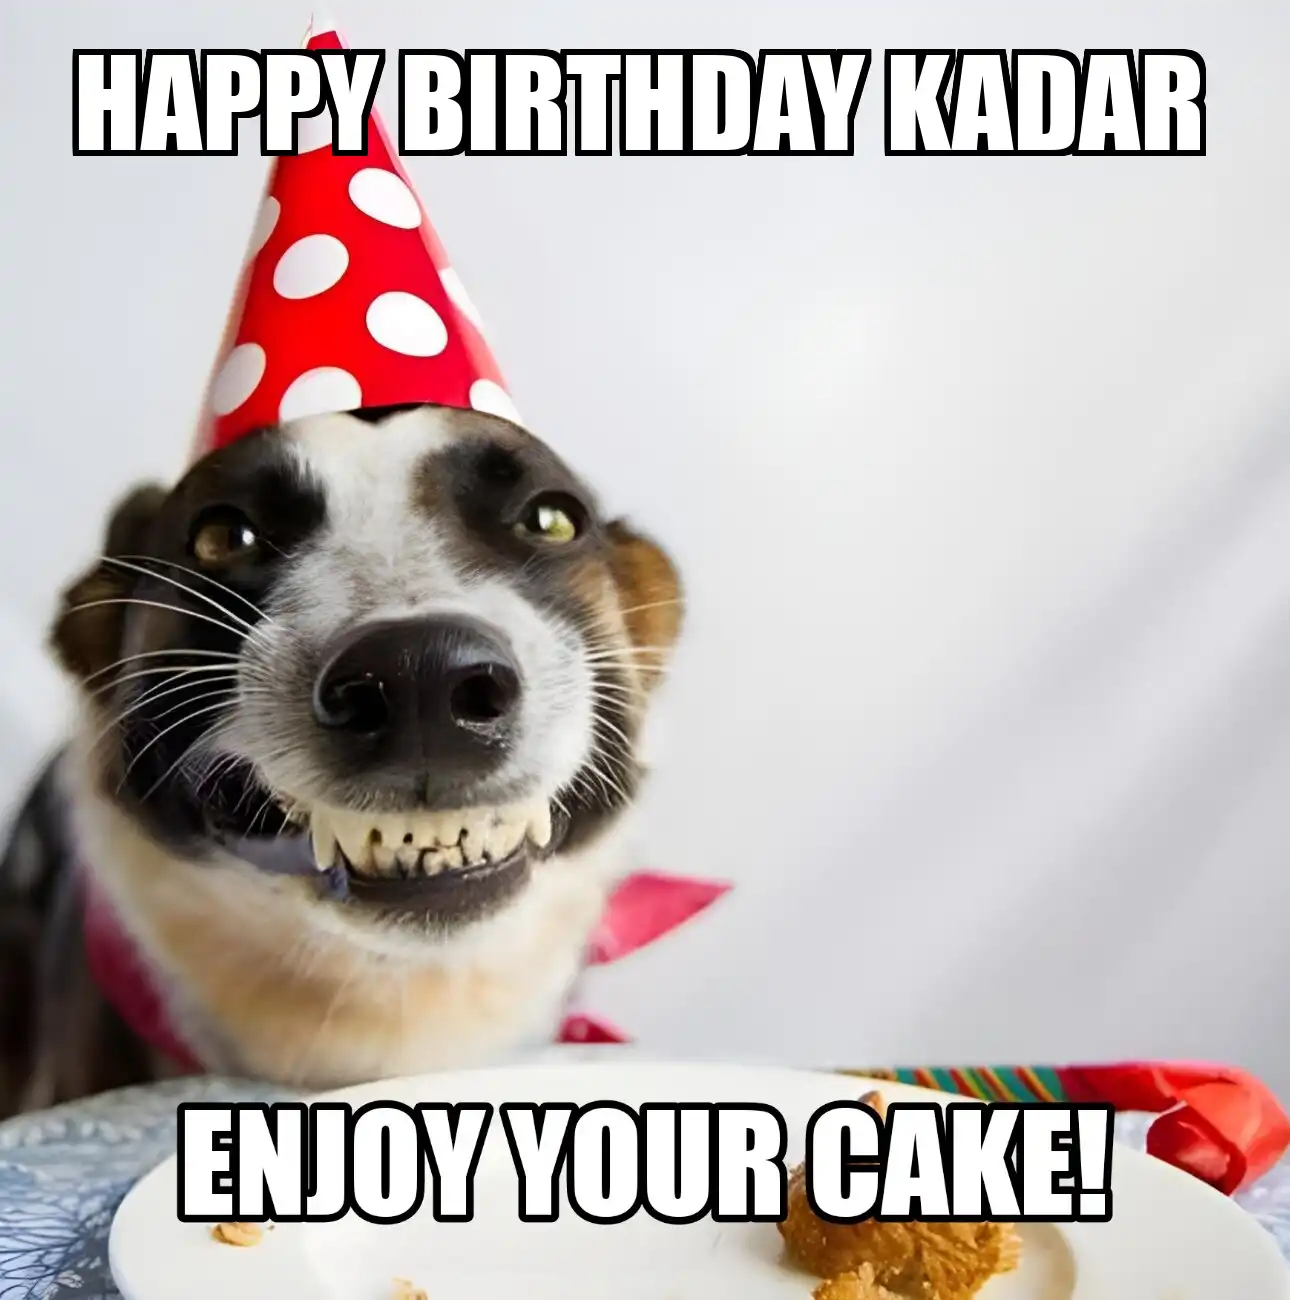 Happy Birthday Kadar Enjoy Your Cake Dog Meme